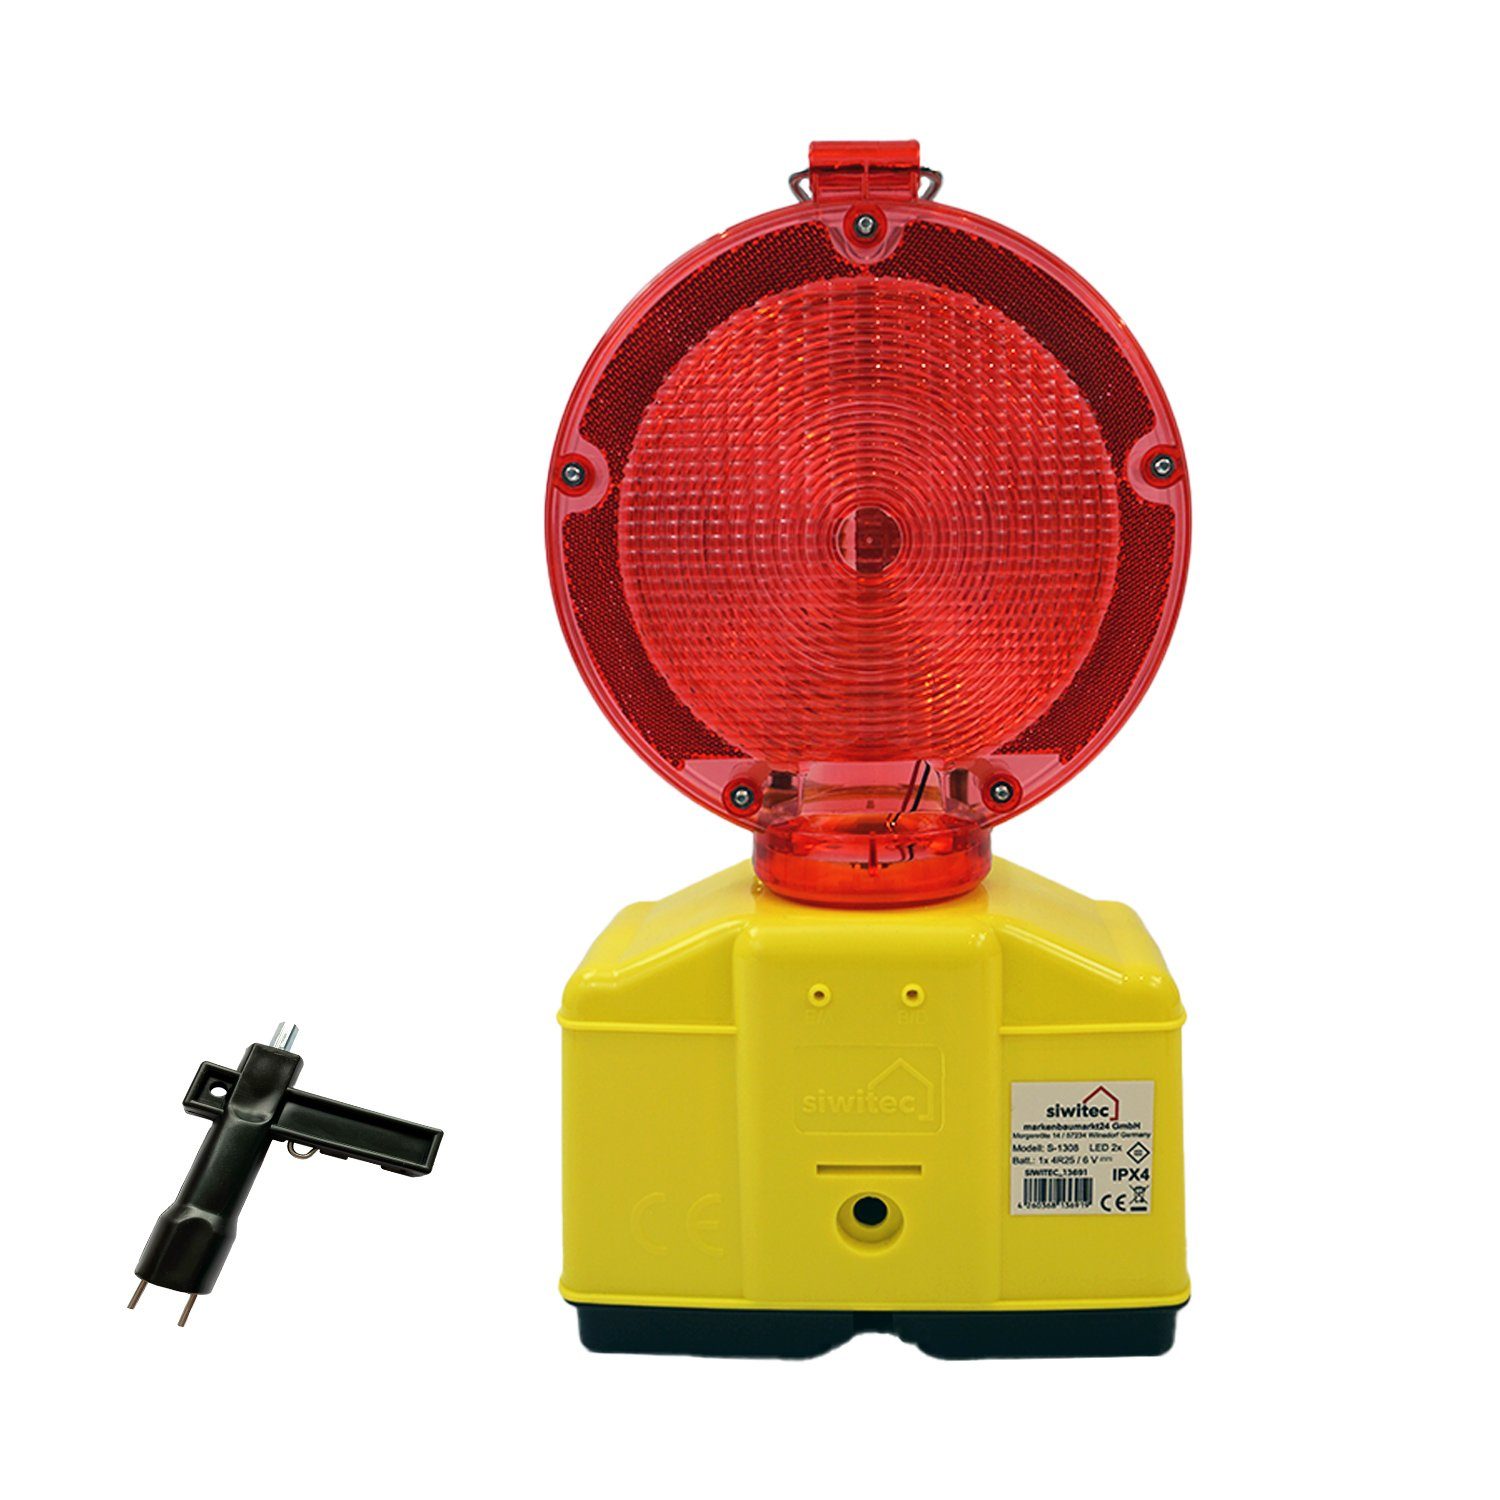 Dauerlichtfunktion, siwitec Dämmerungsautomatik mit und Rot/Transparent und Lampenschlüssel, LED Blink- Warnleuchte Dämmerungssensor Baustrahler